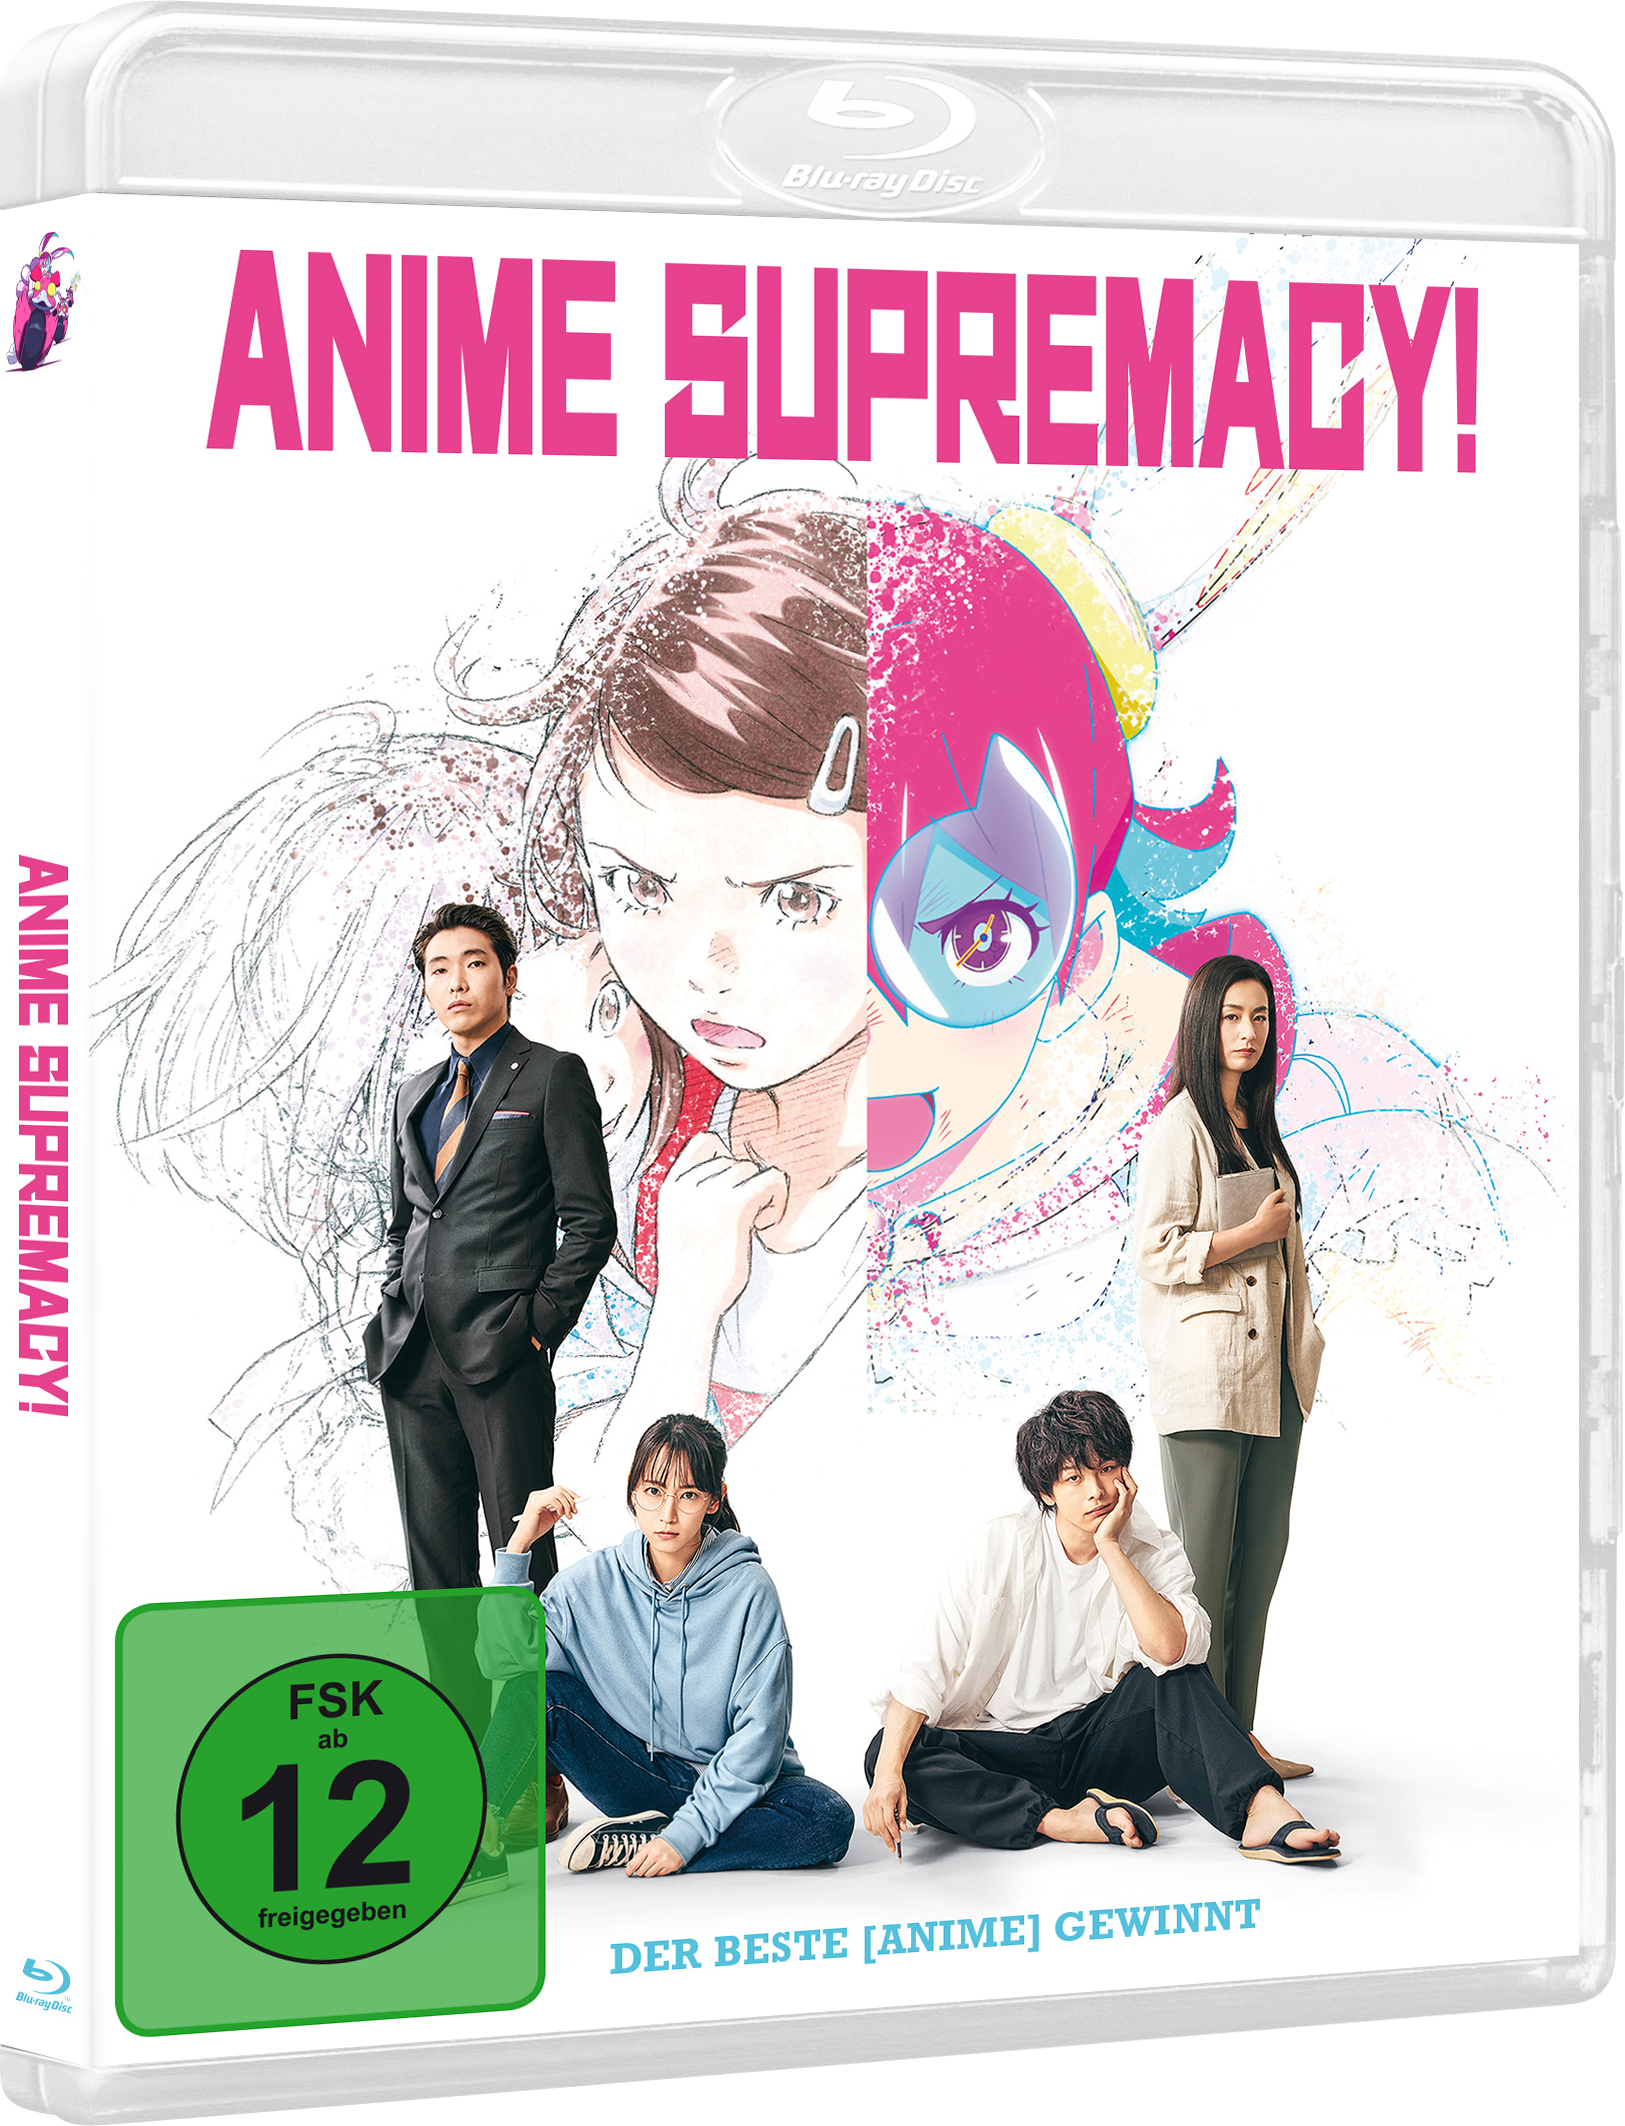 Anime Supremacy! - Der beste [Anime] gewinnt [Blu-ray] Image 2